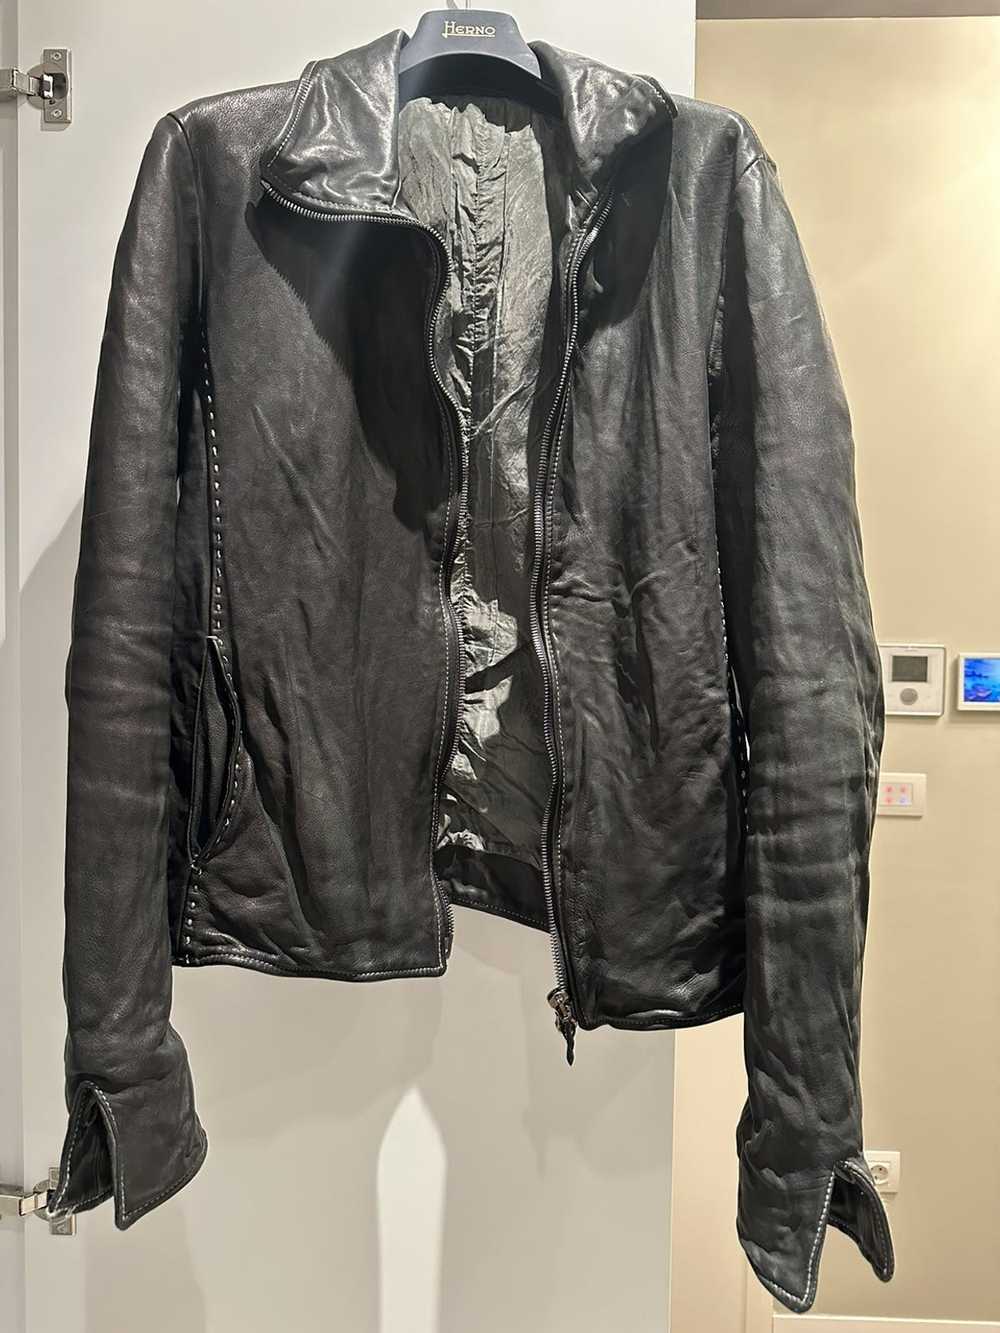 Incarnation Incarnation leather jacket - image 1